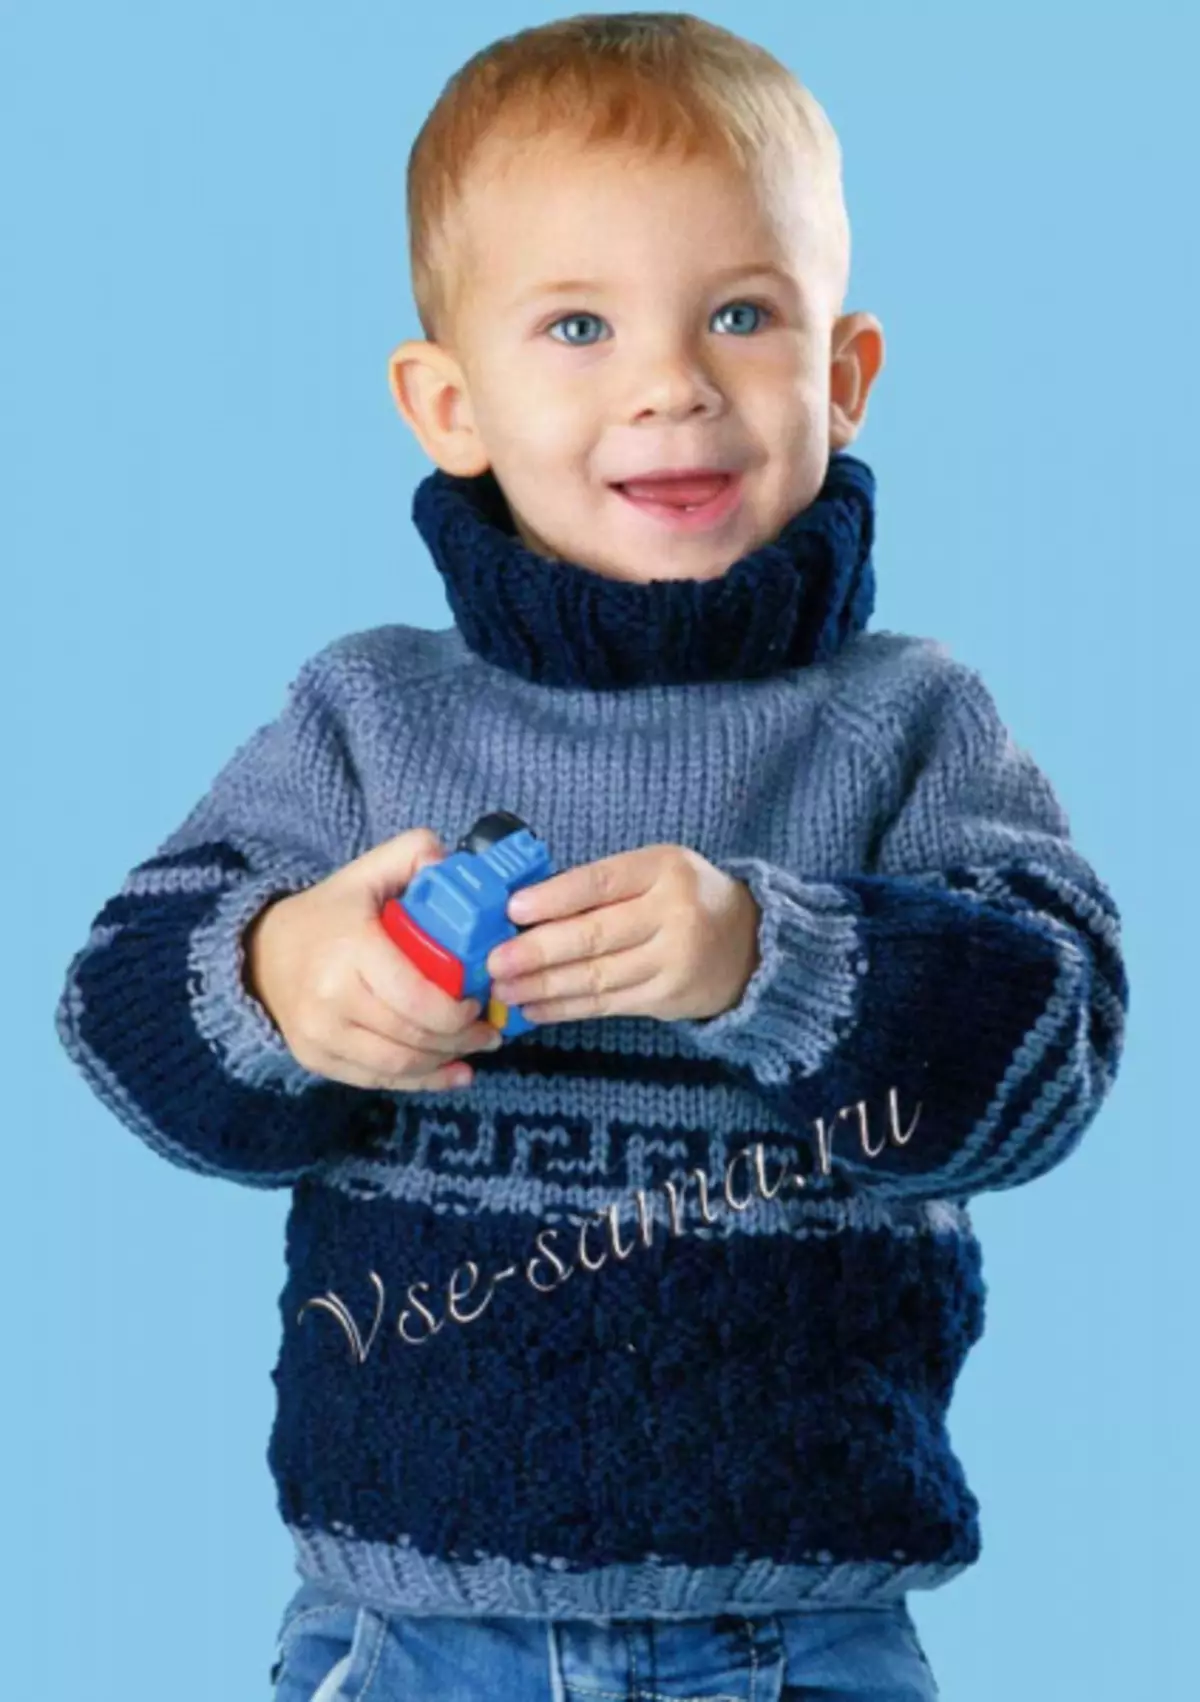 Џемпер за момчето со плетење игли: Rella за бебе 1-3 години со фотографии и видеа